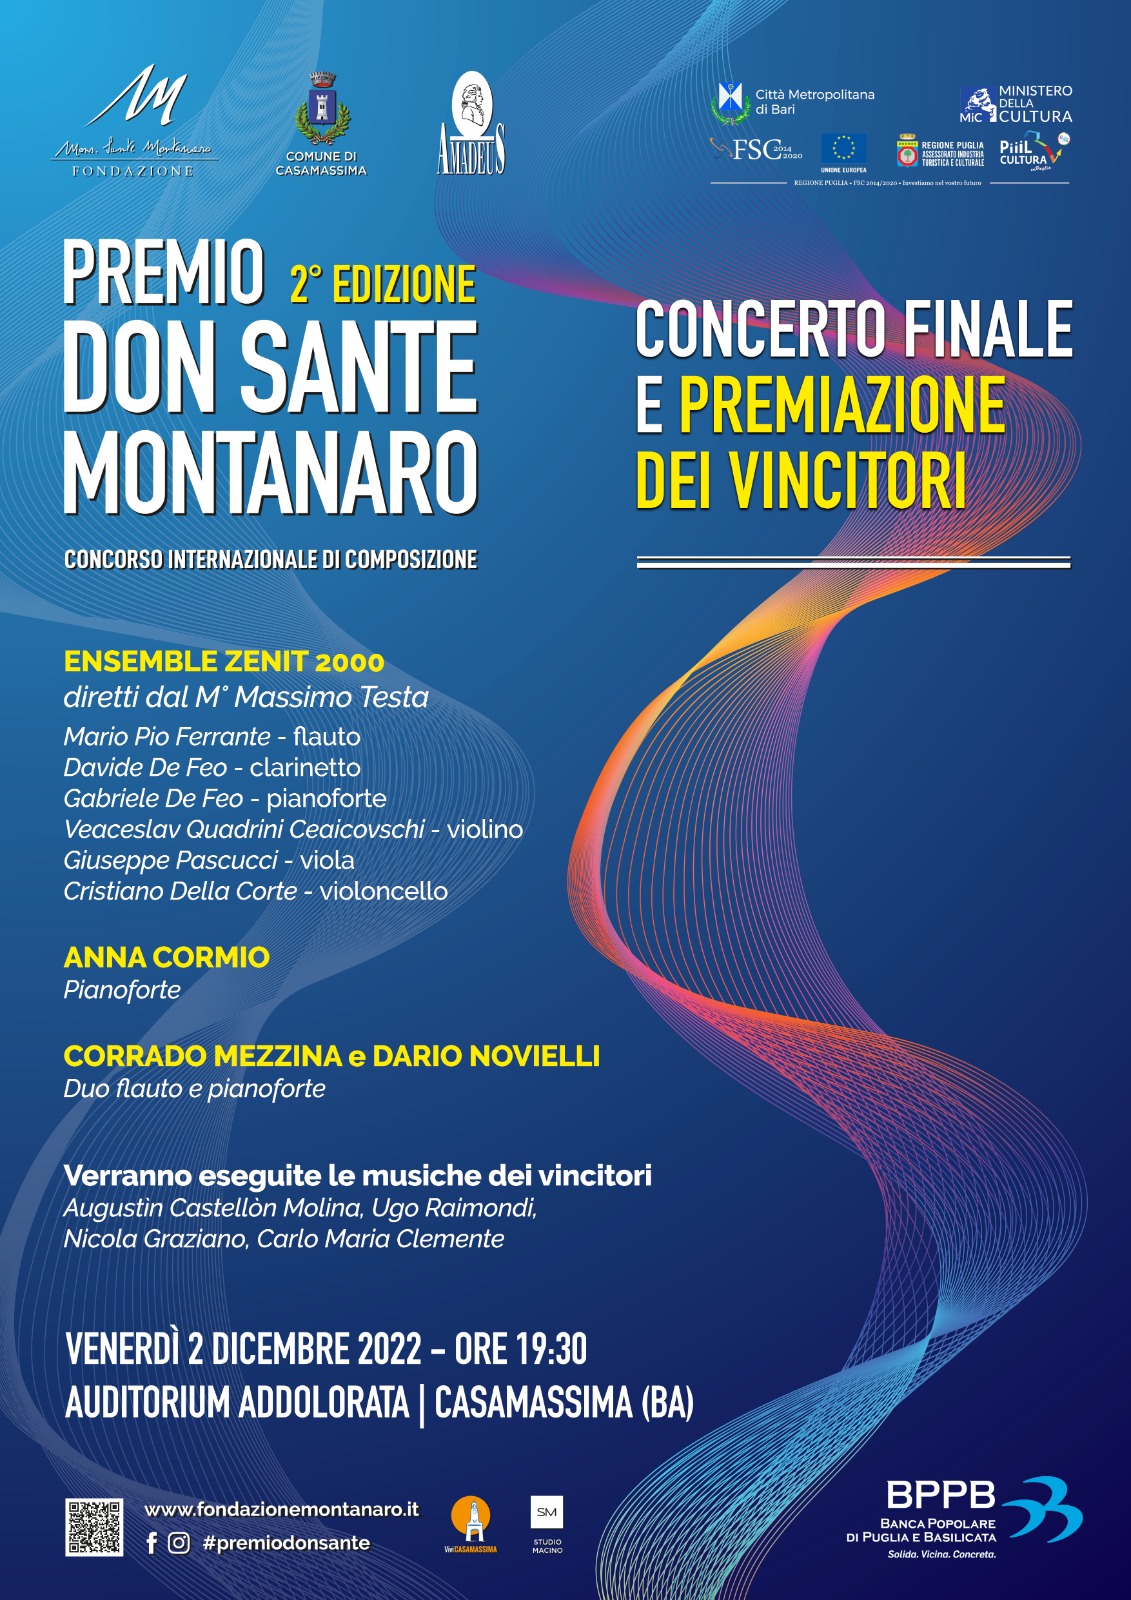 fondazione monsignor sante montanaro Premio don Sante Montanaro per la musica contemporanea 2 edizione concerto finale e premiazione vincitori